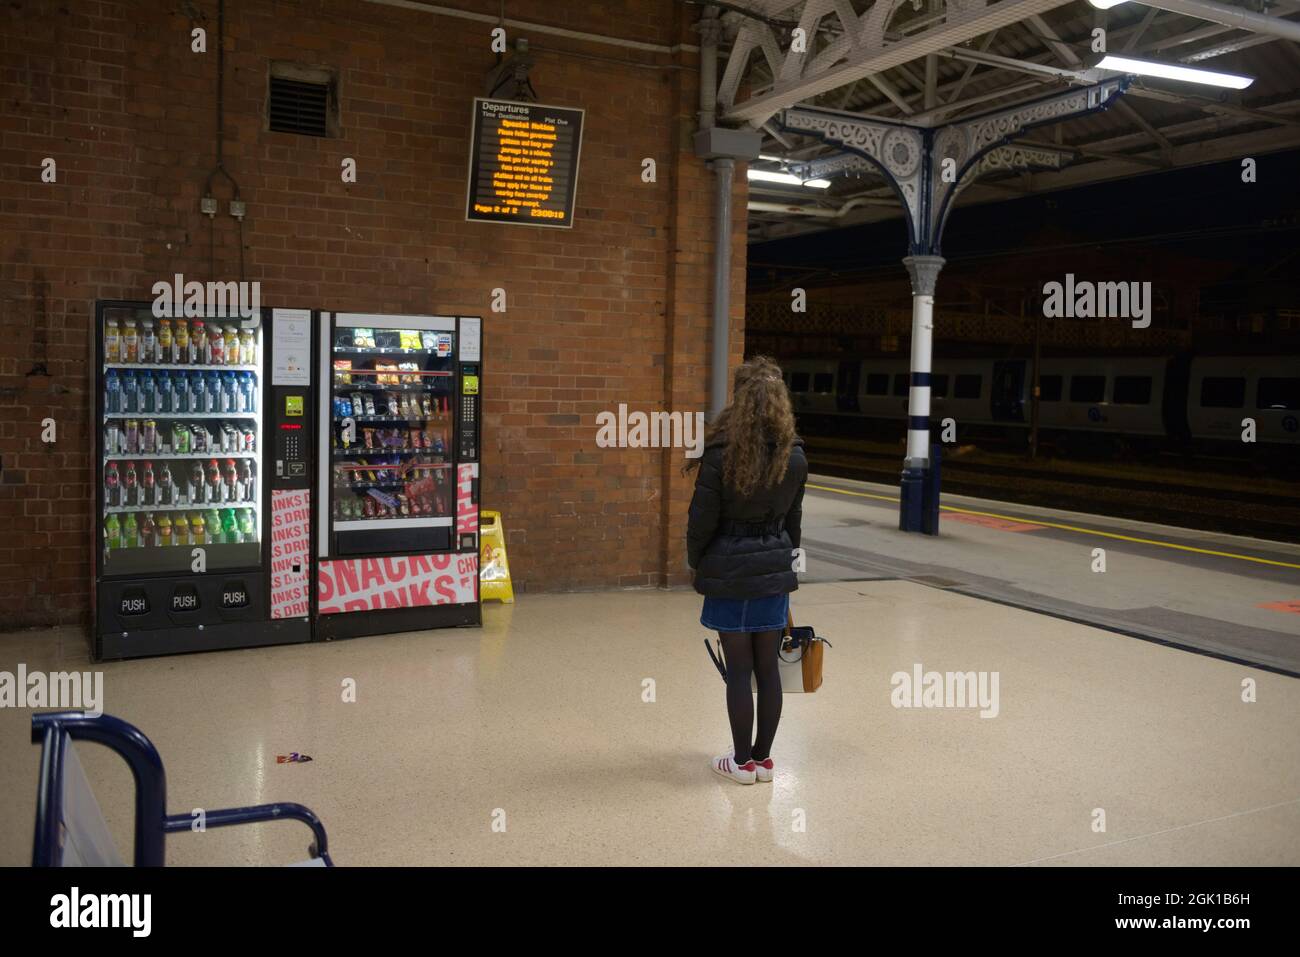 Doncaster, Royaume-Uni, 22 mai 2021: Jeune femme singulière portant un manteau, une jupe et un sac à main, attend pendant la nuit à la gare de doncaster Banque D'Images